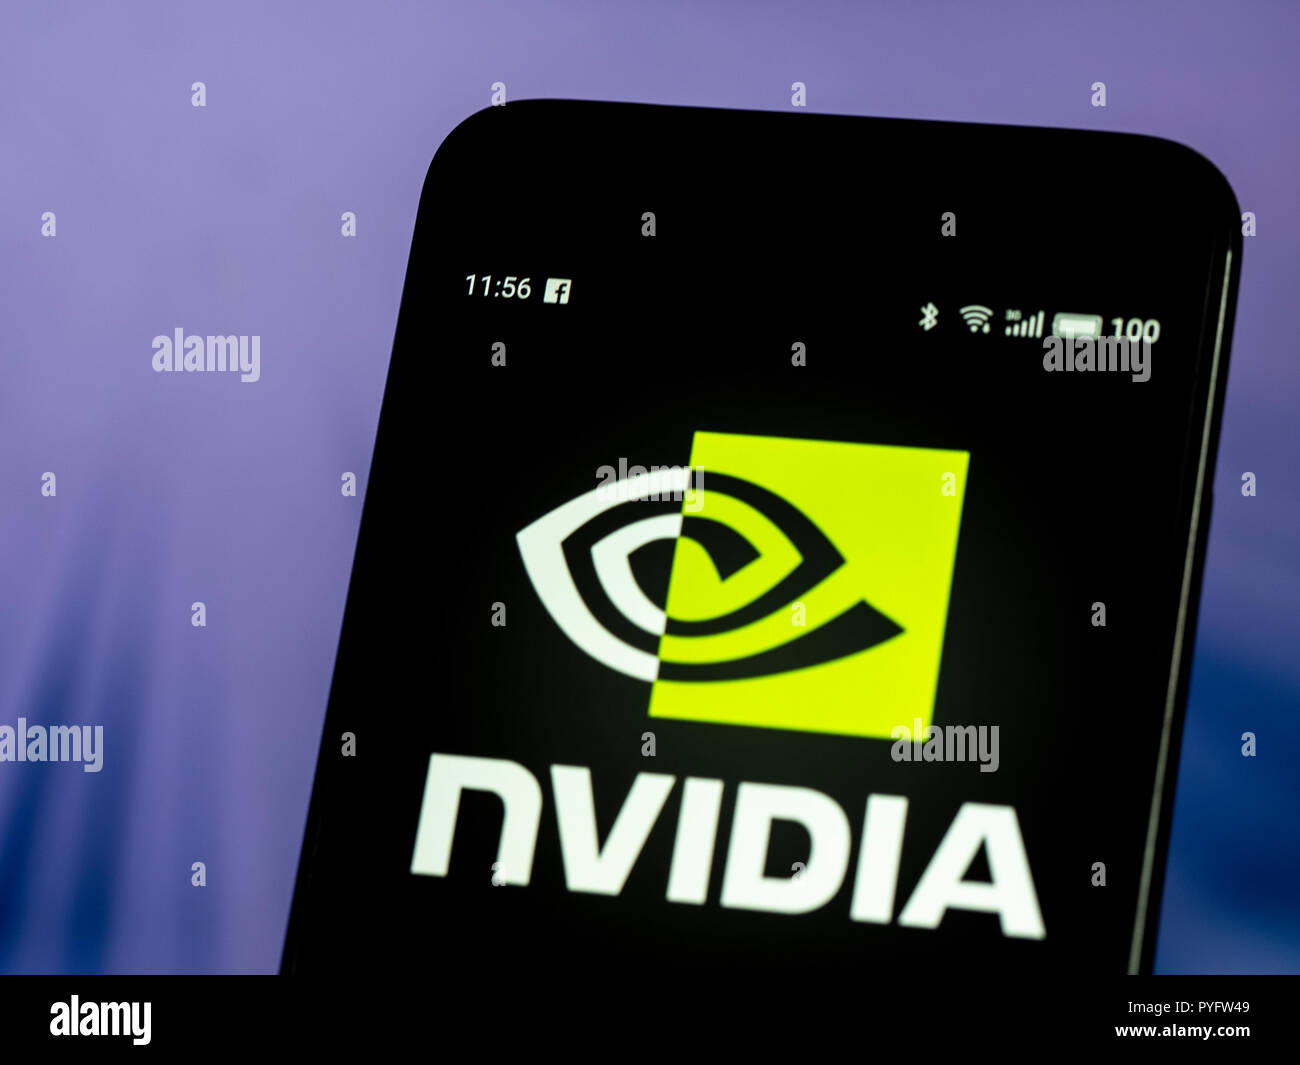 Nvidia Corporation vu le logo affiché sur le téléphone intelligent. Nvidia  Corporation est une société de technologie américaine. Elle conçoit des  unités de traitement graphique (GPU) pour le gaming et les marchés